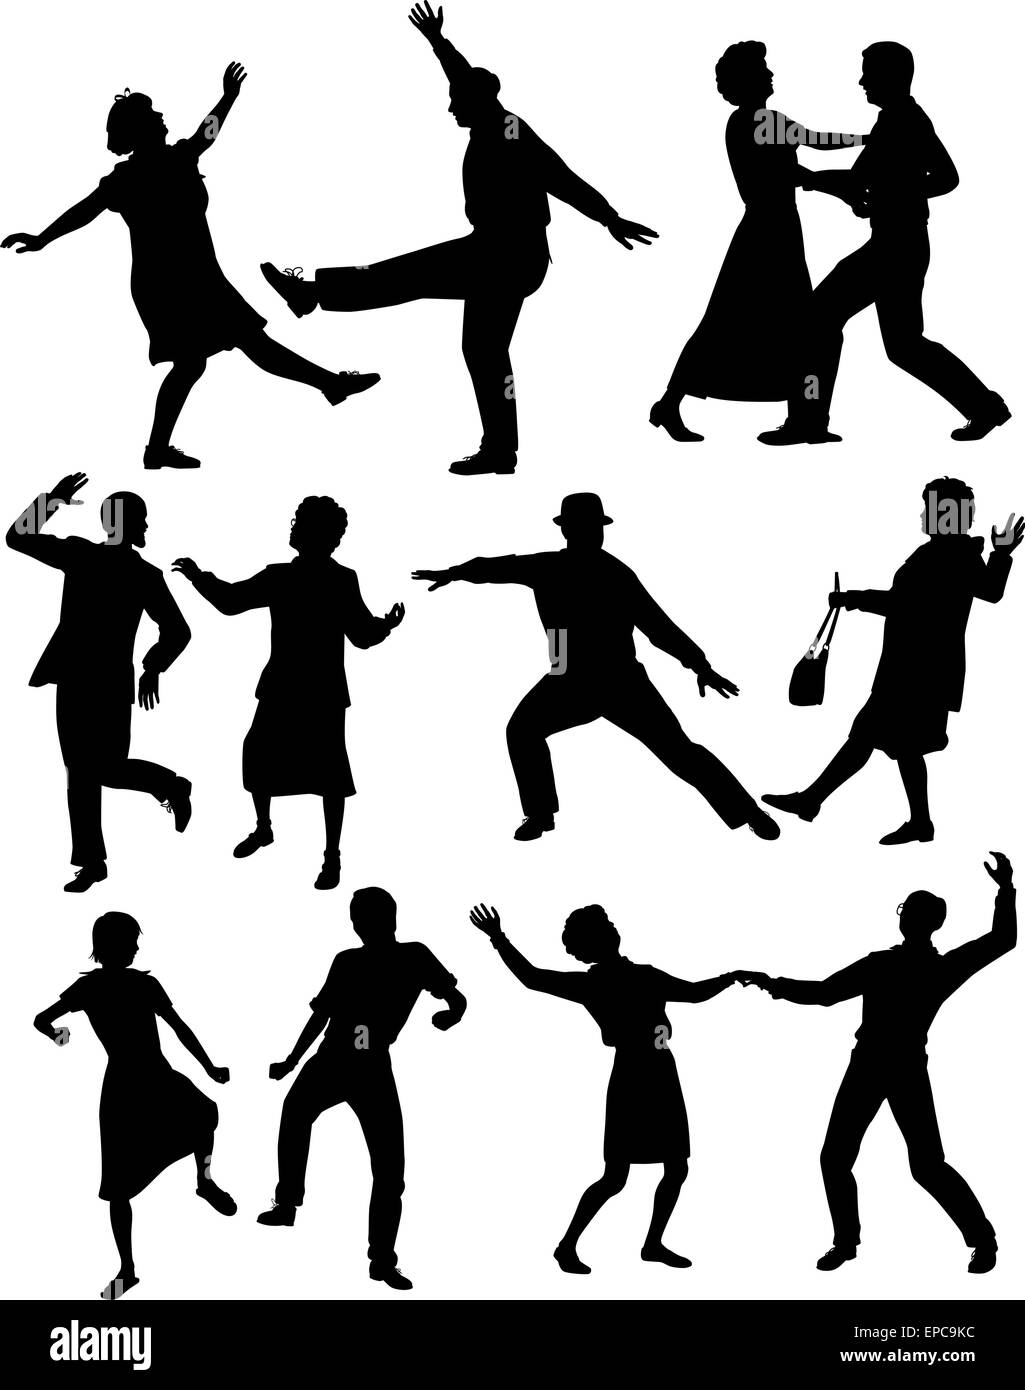 Jeu de silhouettes vecteur modifiable de personnes âgées des couples danser ensemble avec tous les chiffres en tant qu'objets séparés Illustration de Vecteur